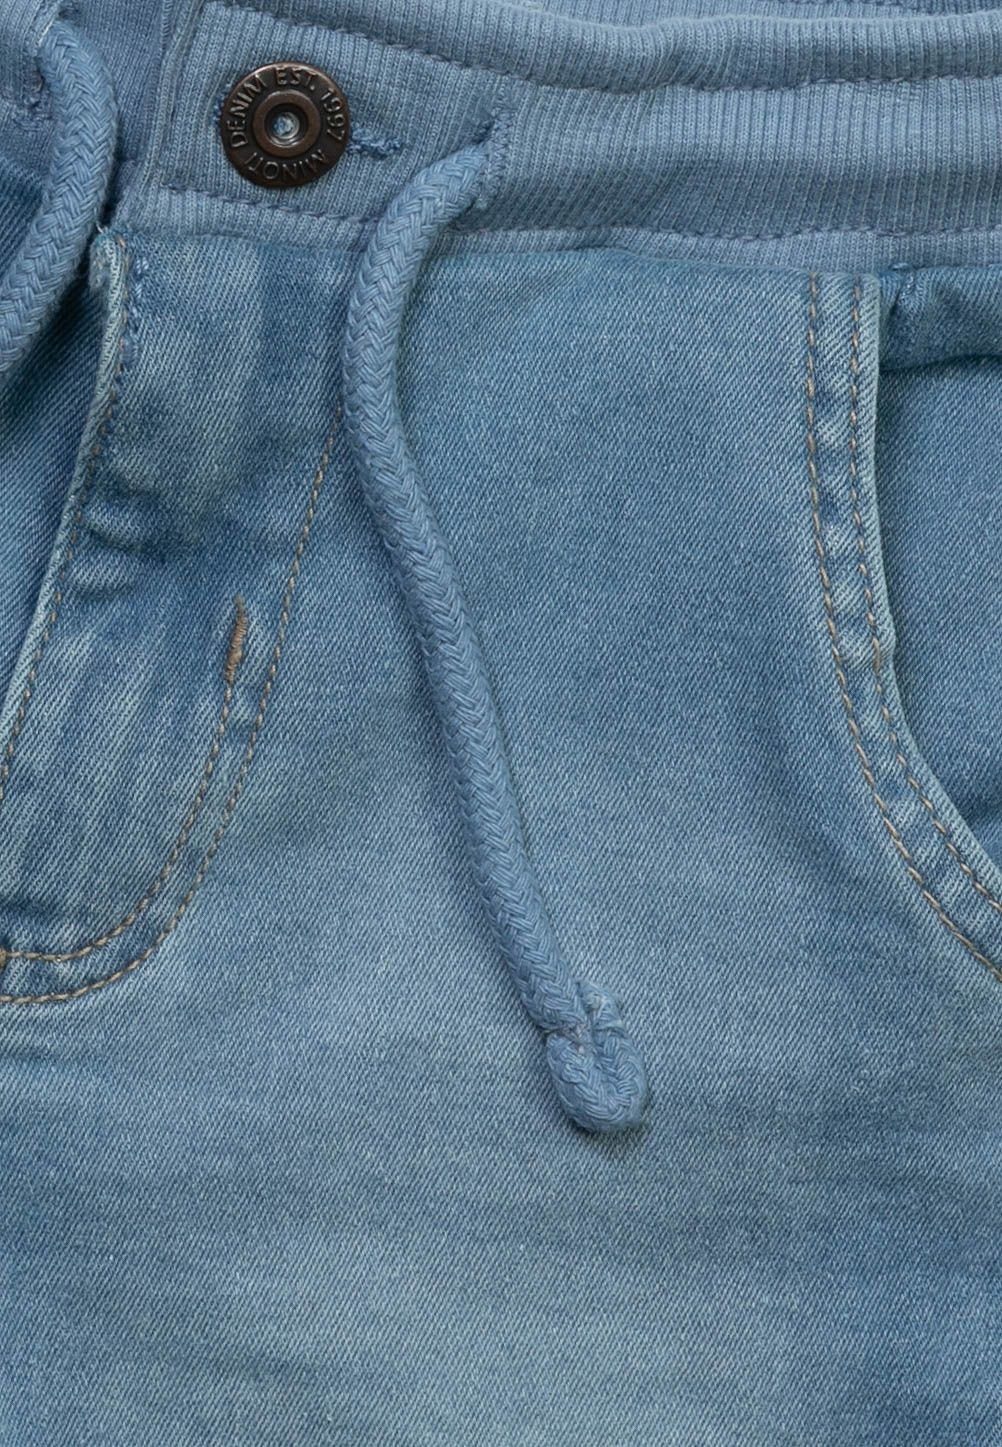 MINOTI Jeansshorts Shorts (1y-8y)